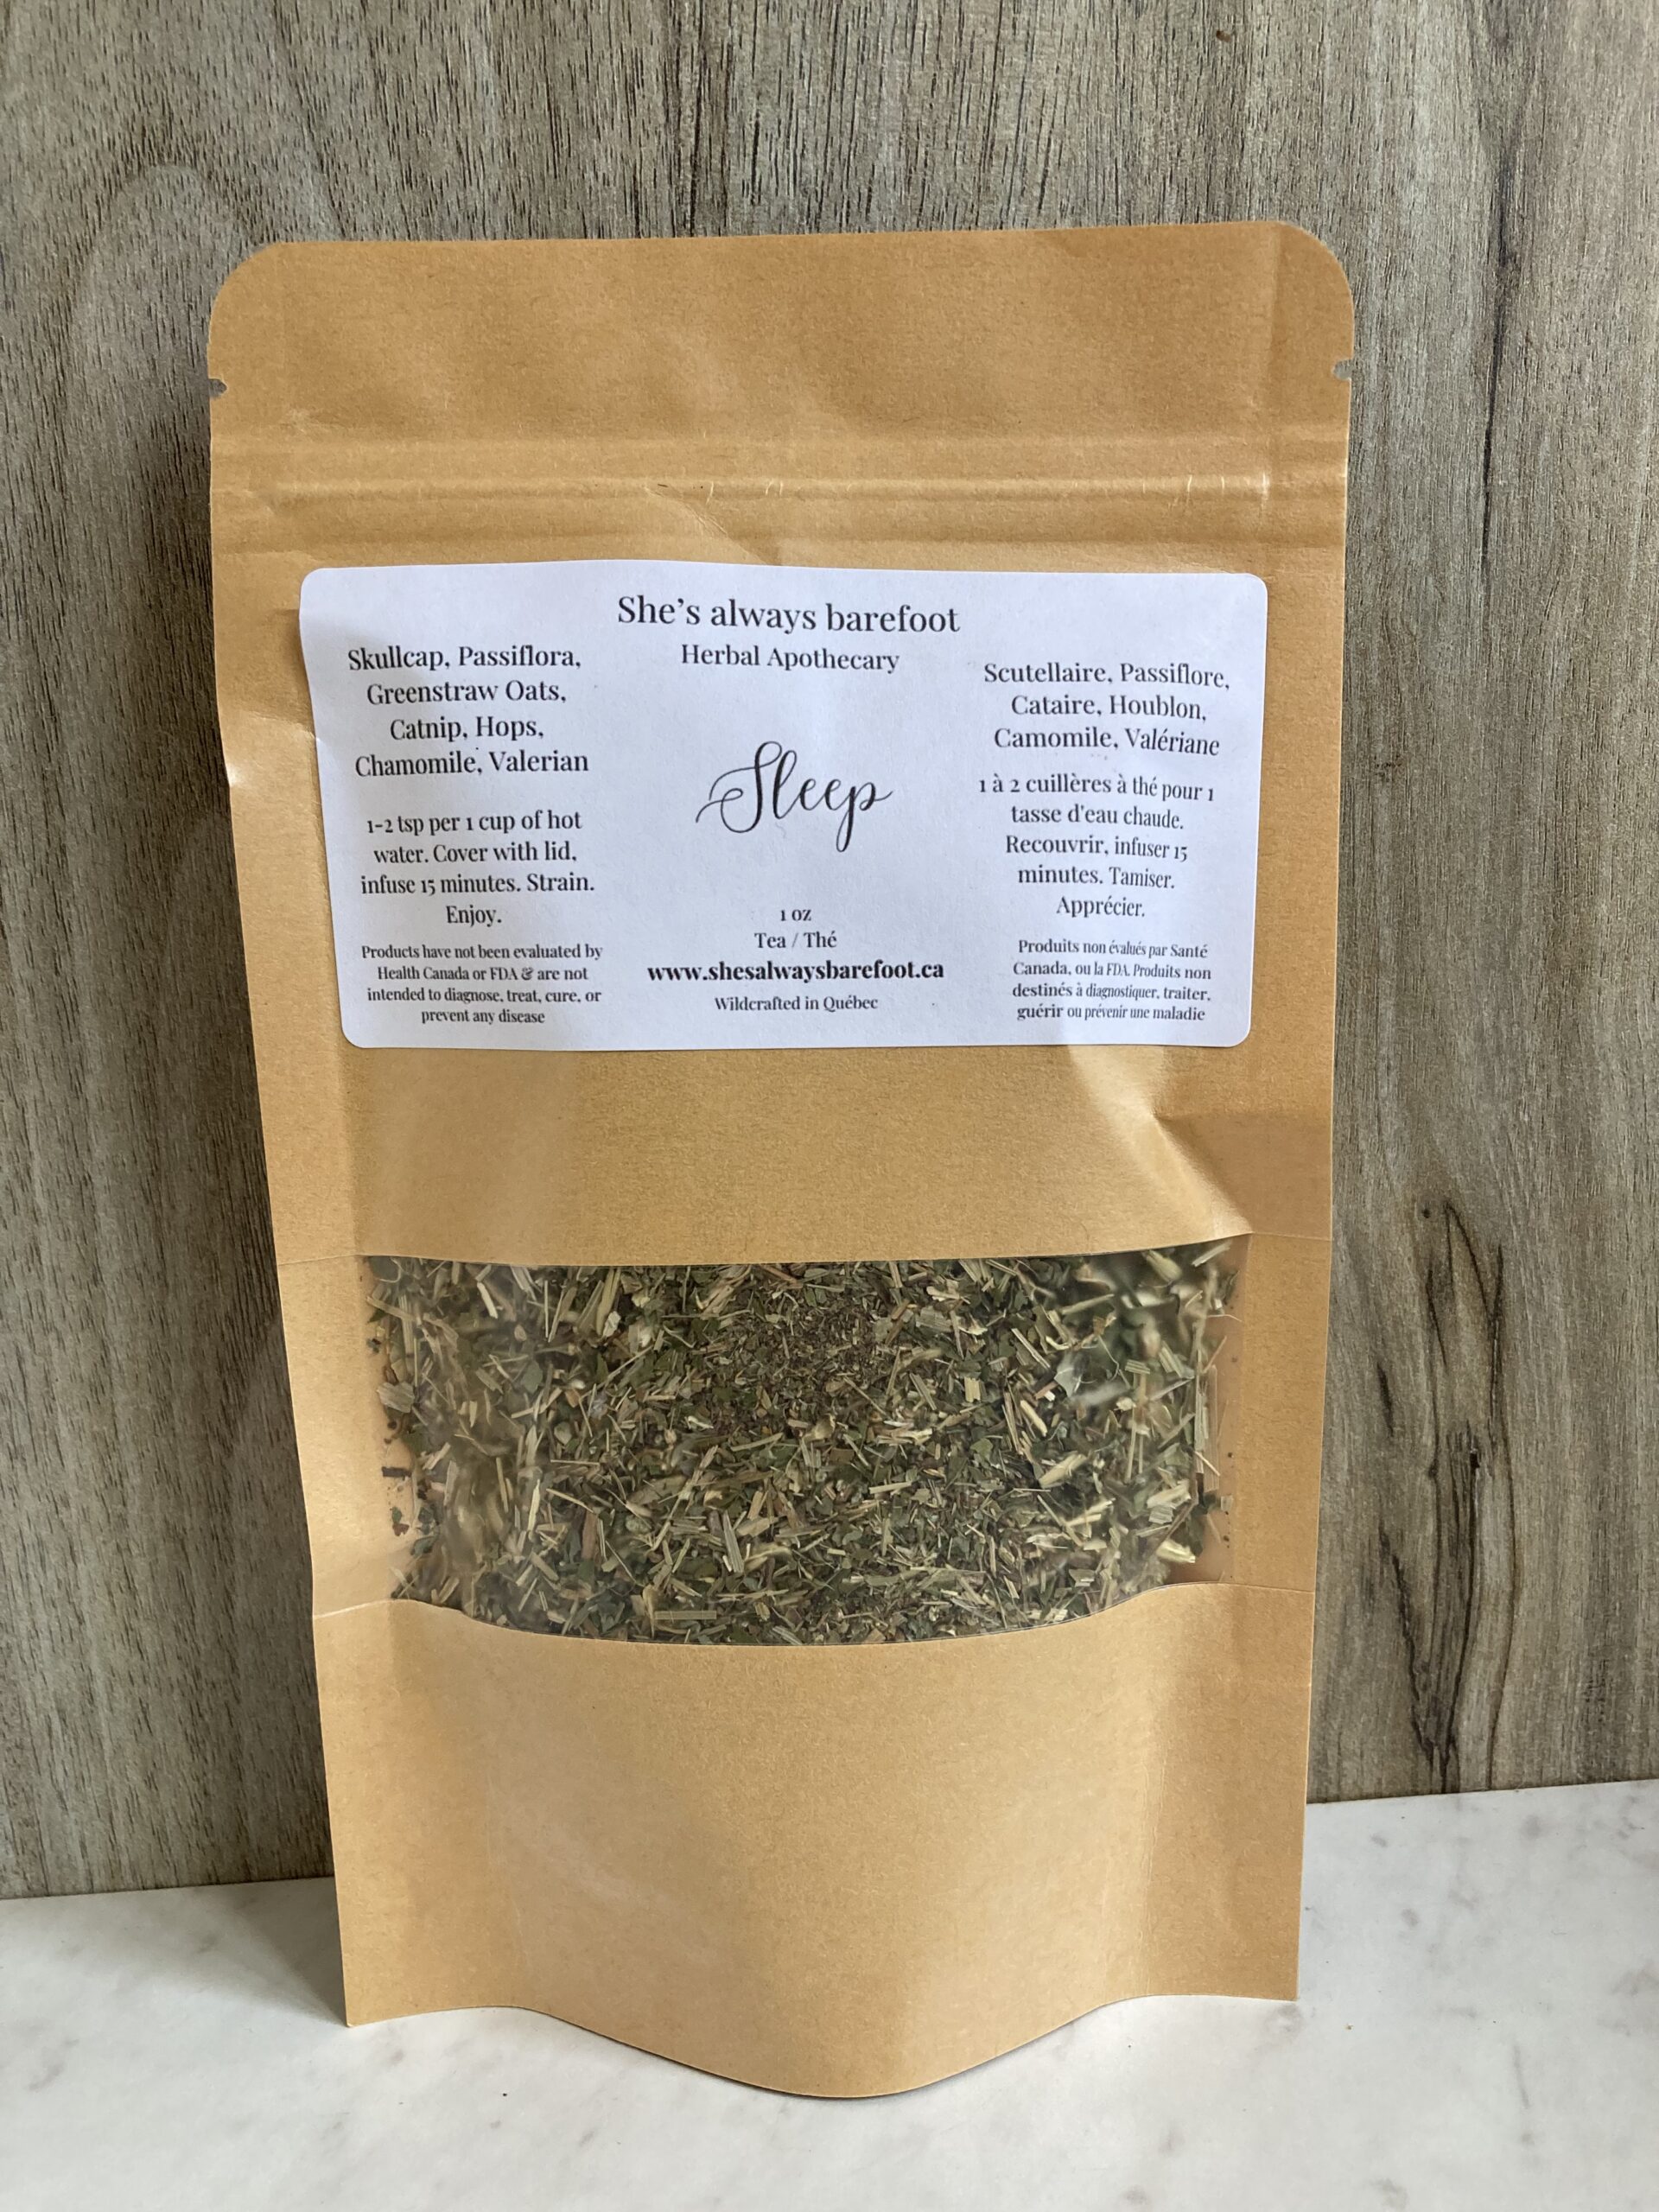 Sleep herbal tea blend